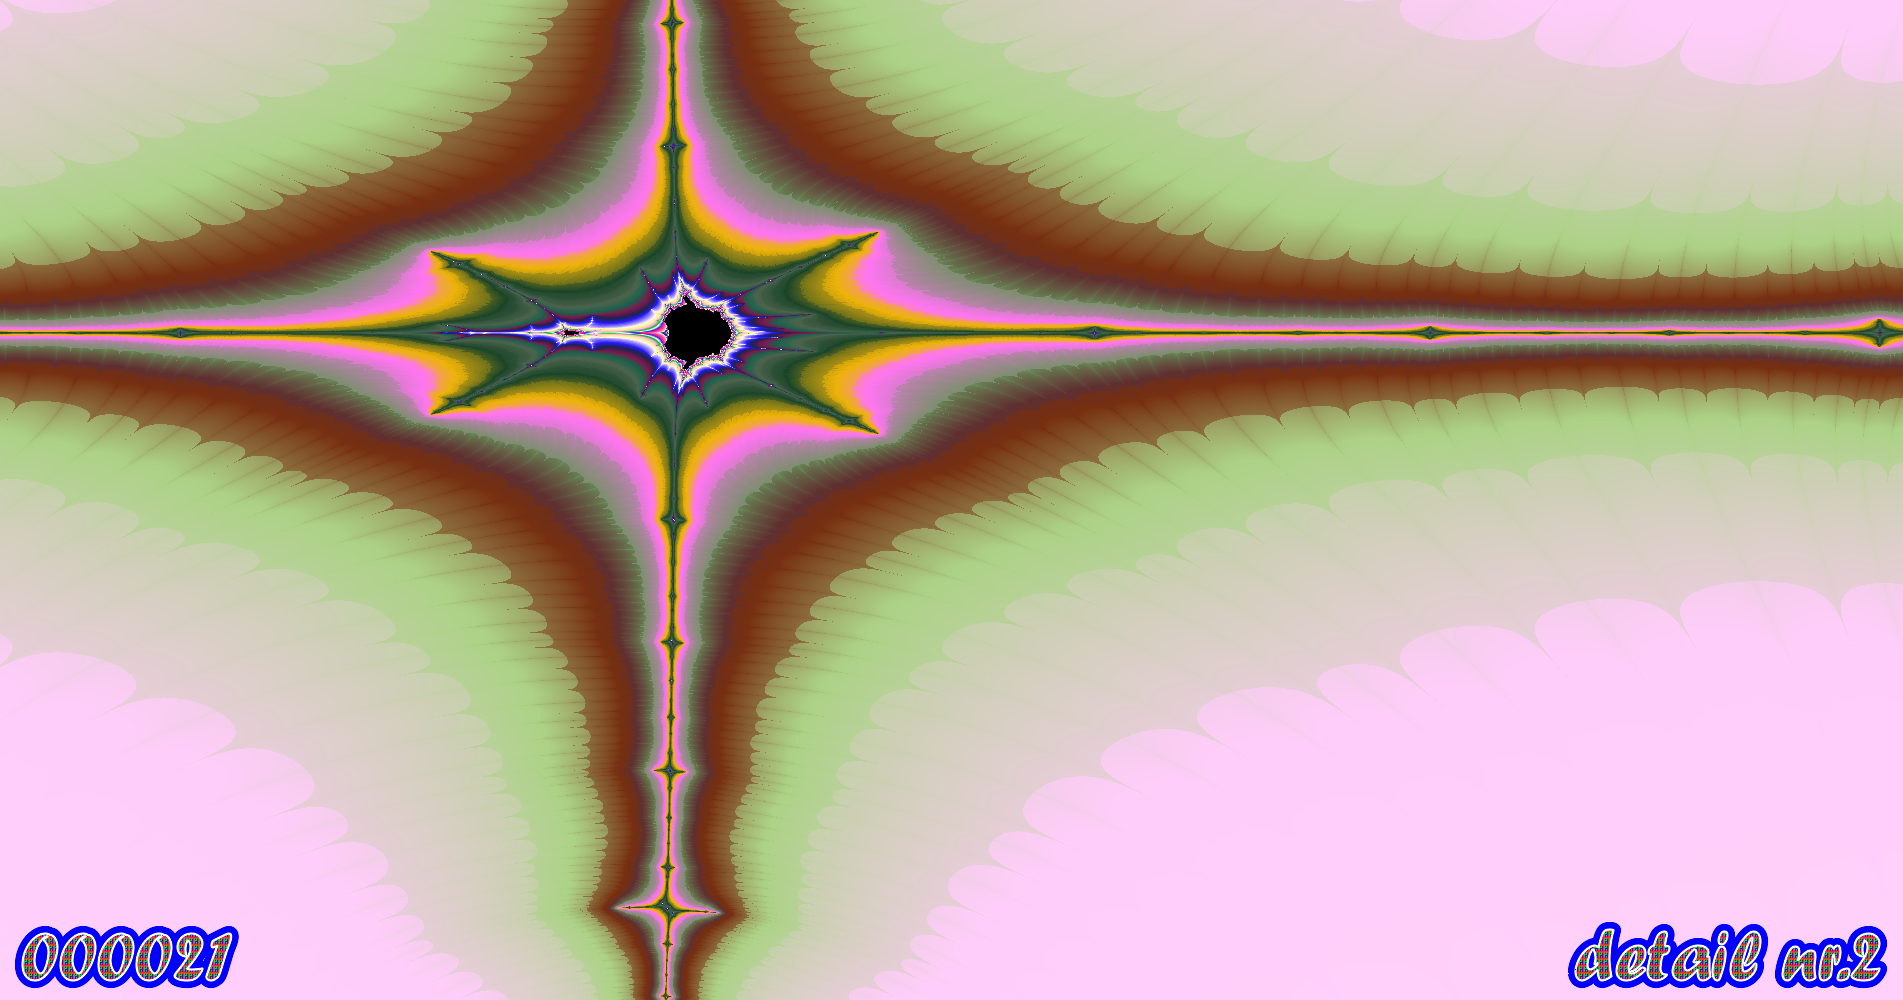 fractal kunst nr. 000021 ,detail nr. 2